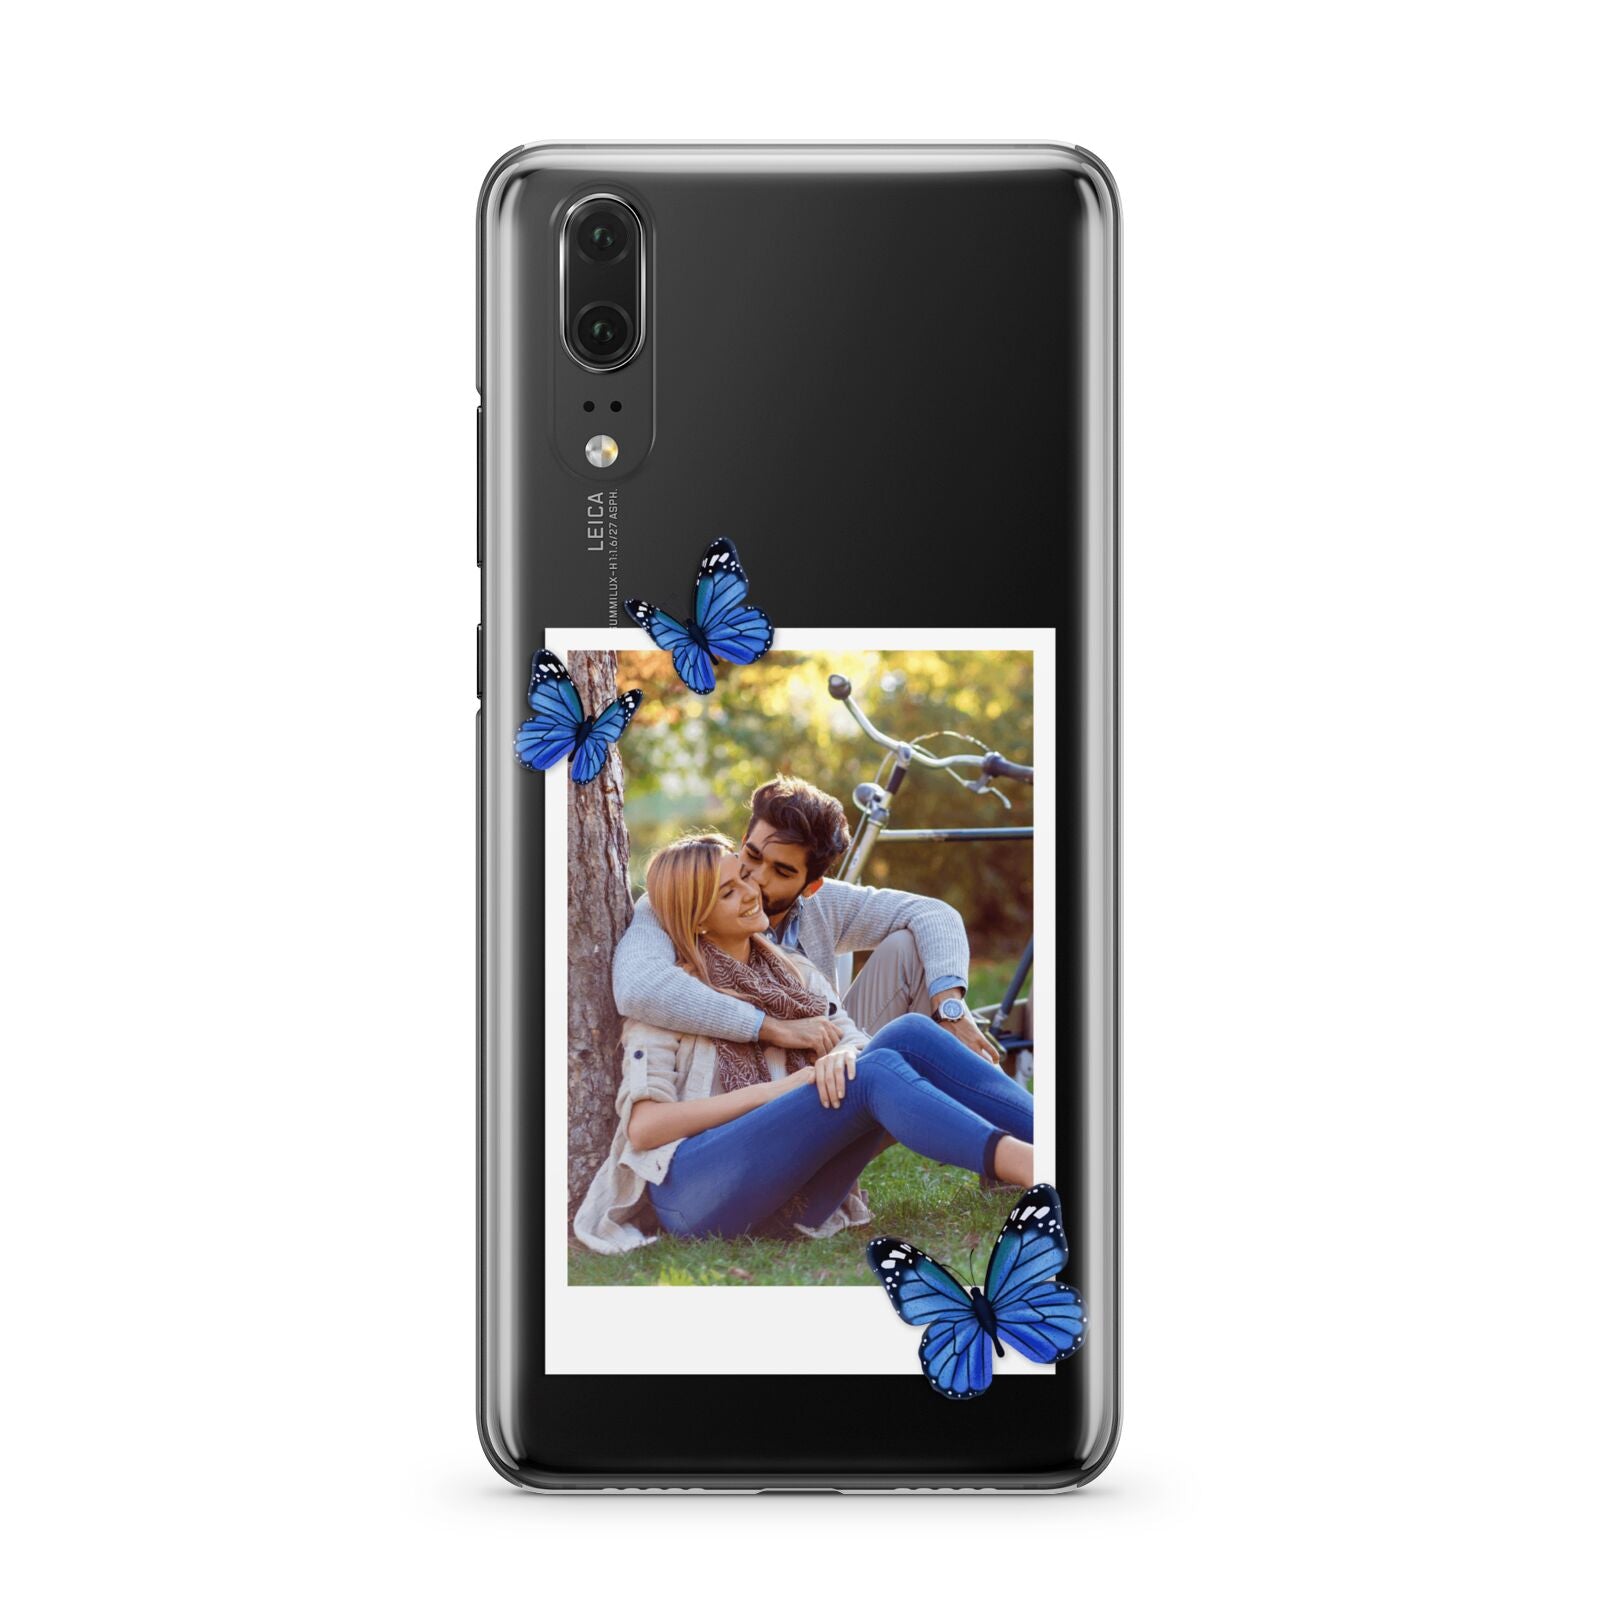 Polaroid Photo Huawei P20 Phone Case